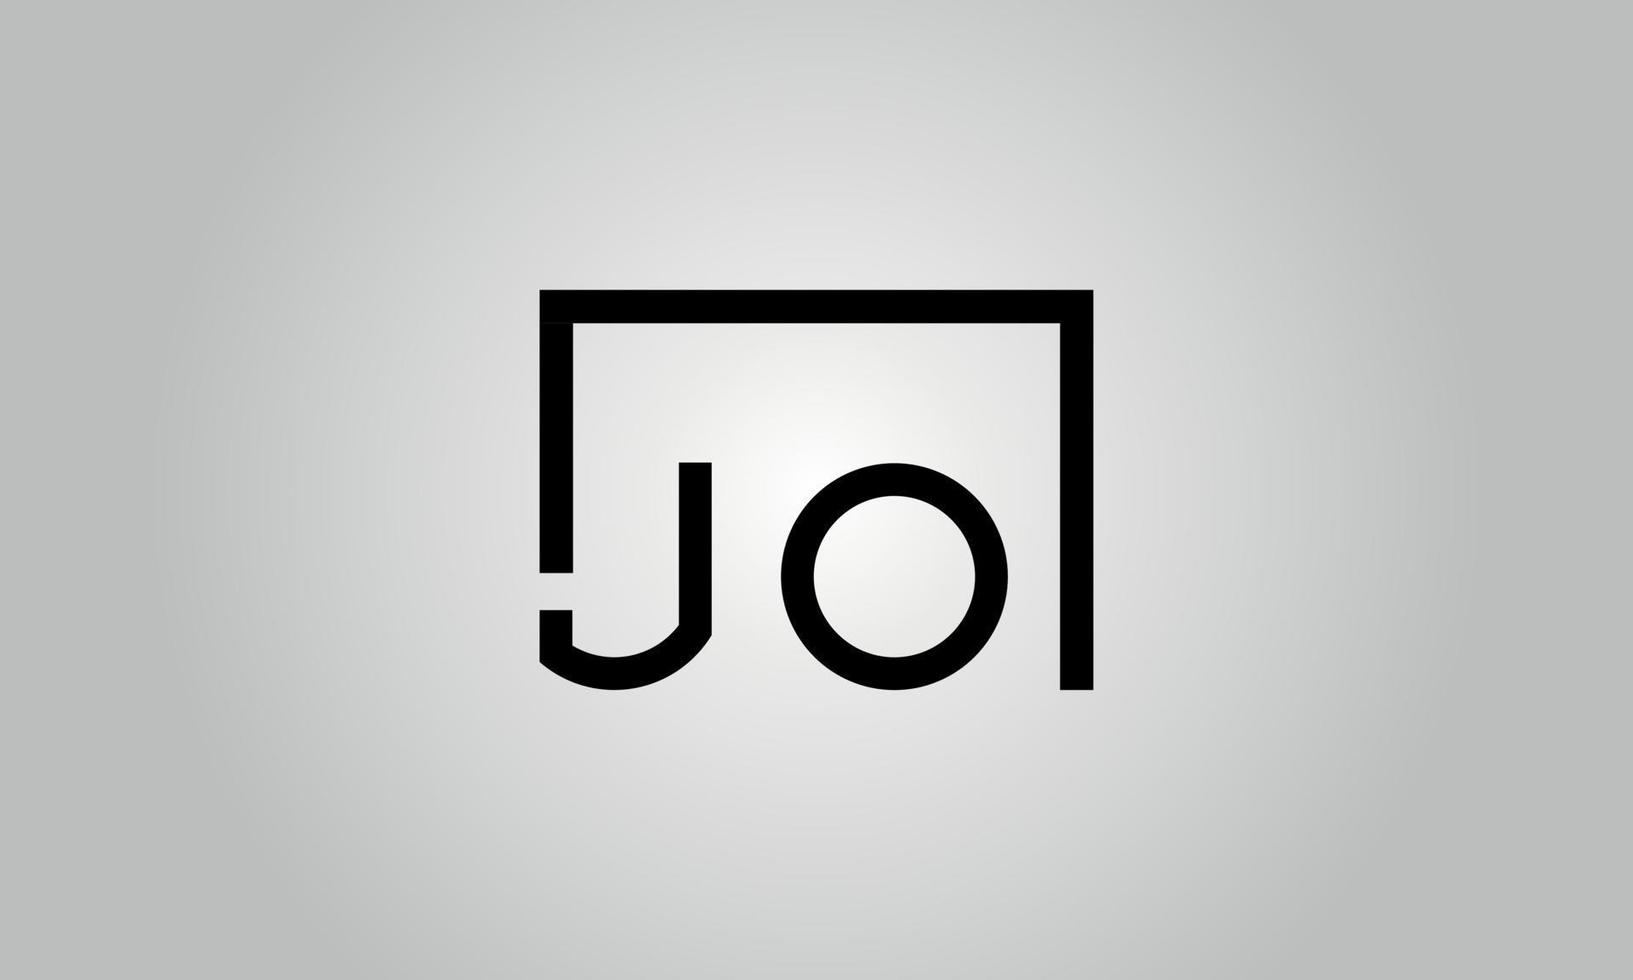 création de logo lettre jo. logo jo avec forme carrée dans le modèle de vecteur gratuit de vecteur de couleurs noires.